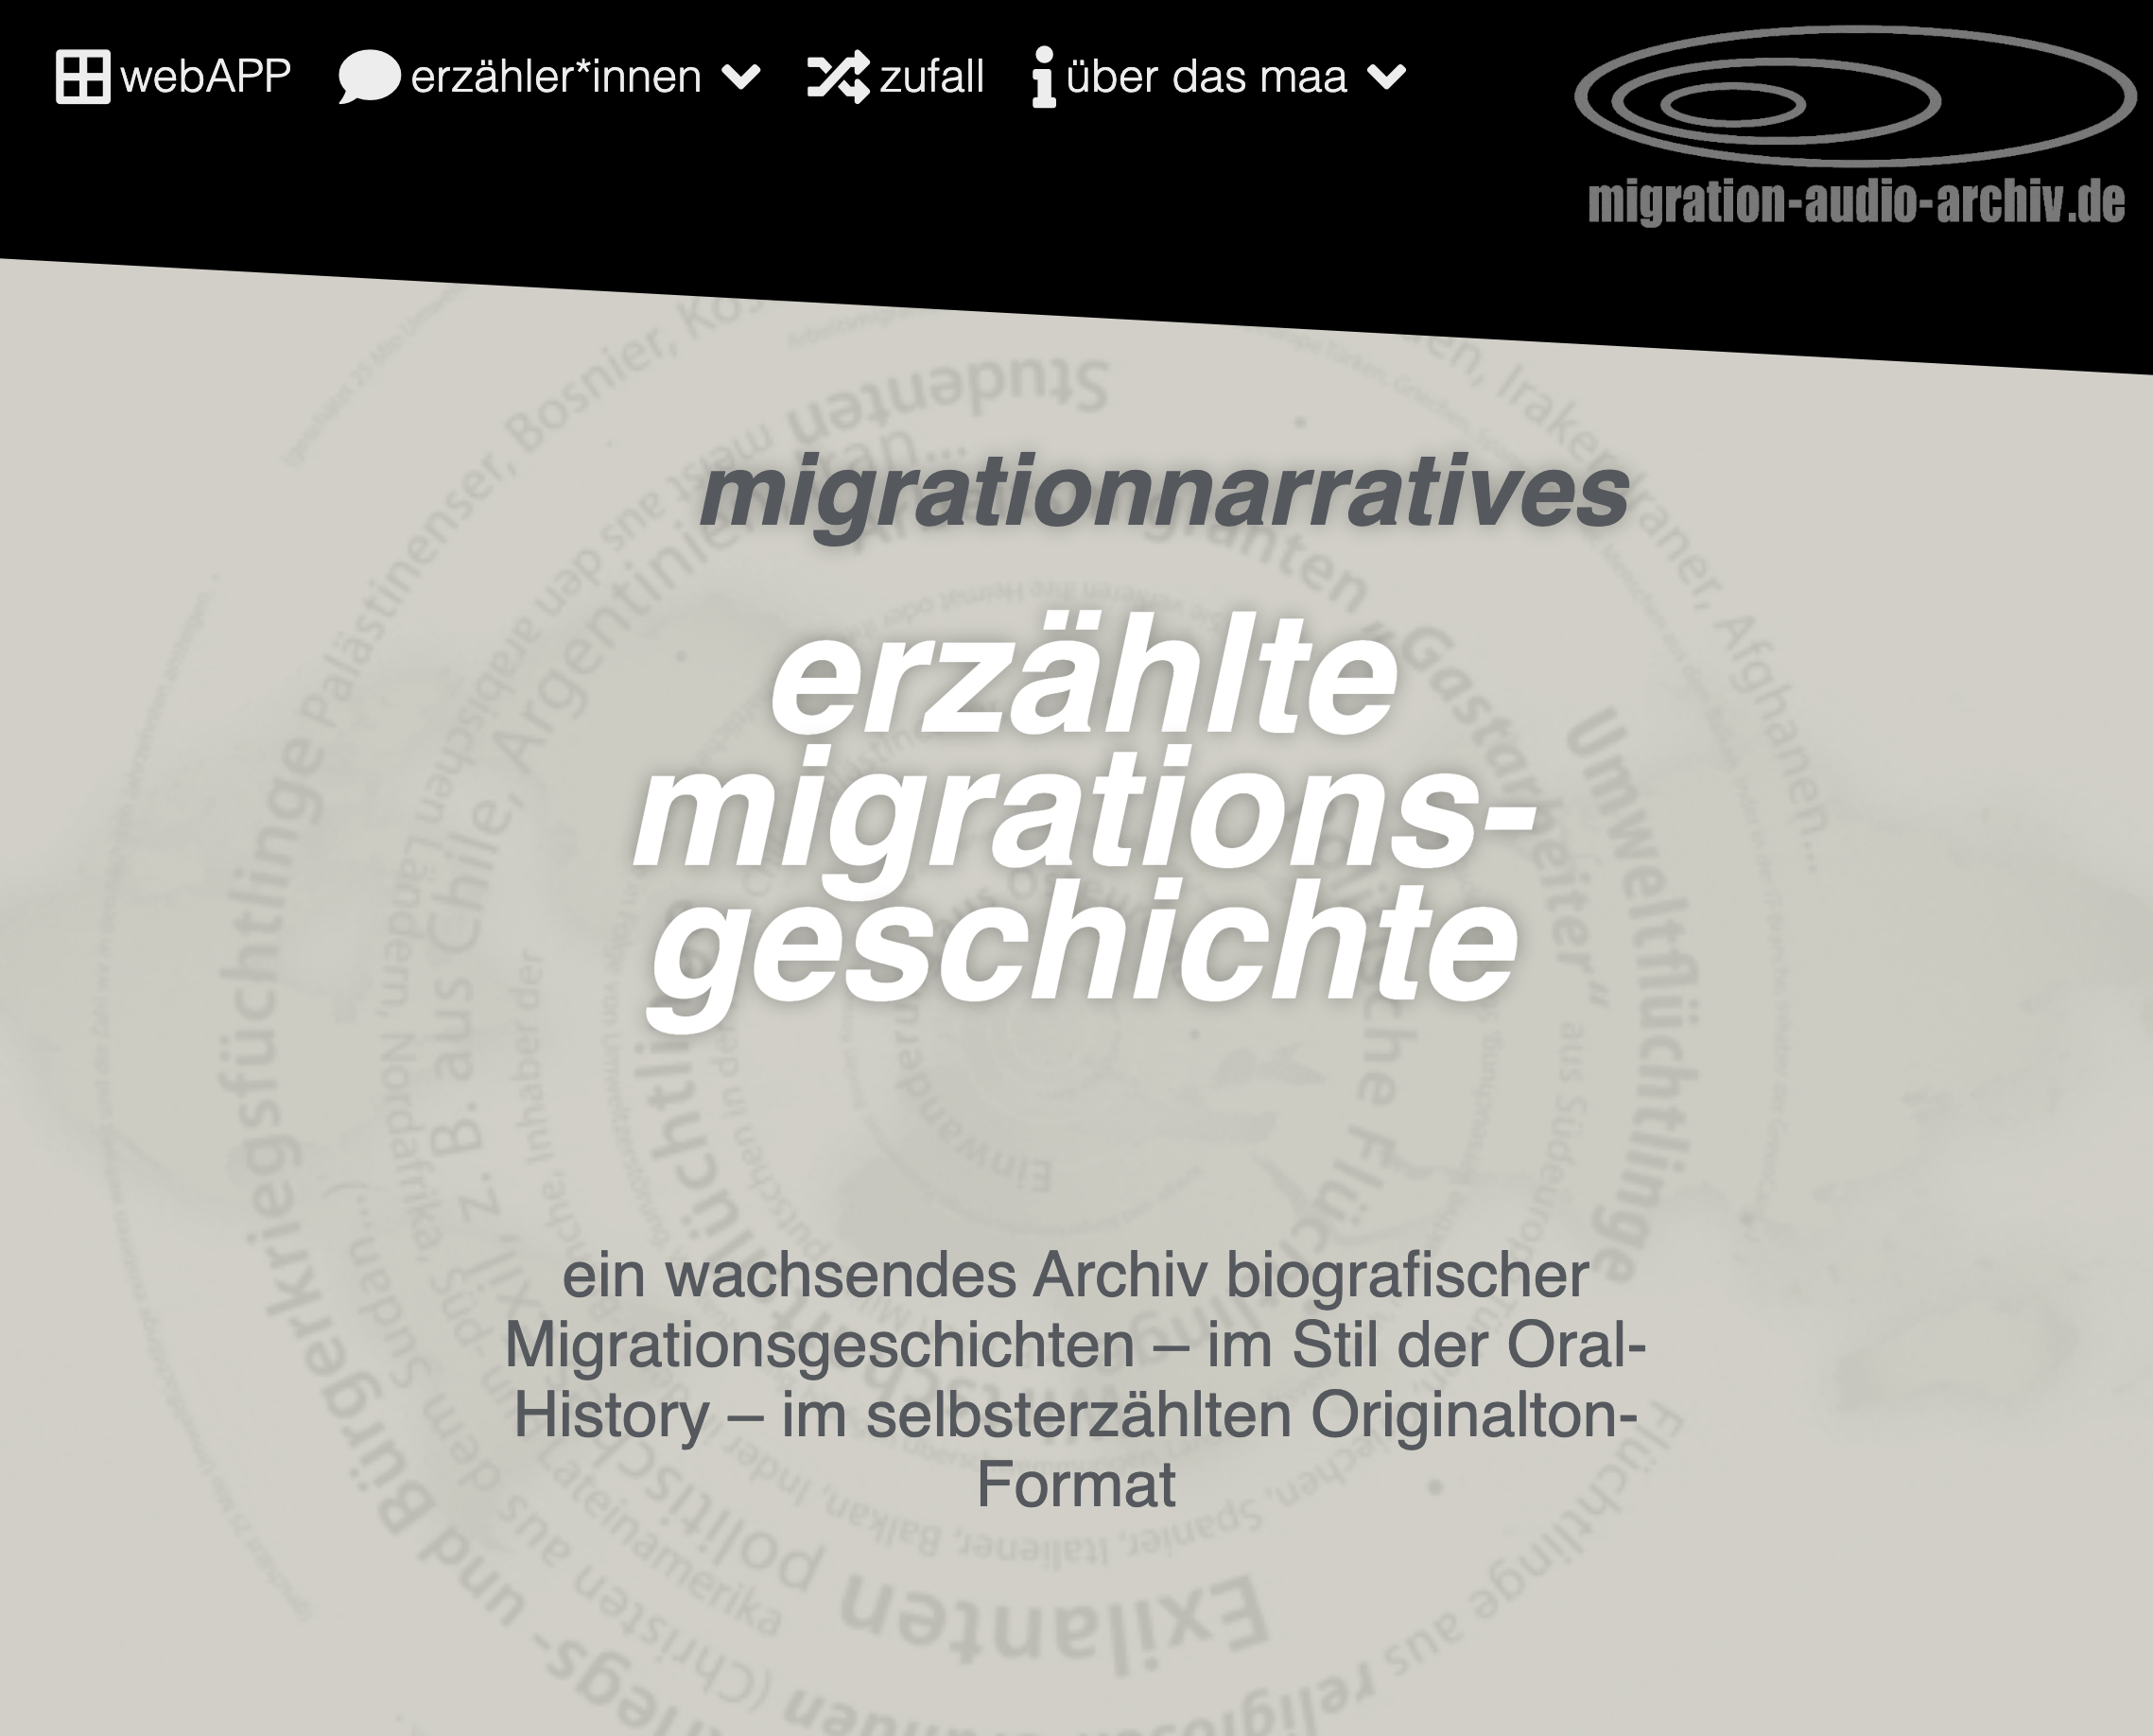 Cover: erzählte migrationsgeschichte - migrationnarratives | Das migration-audio-archiv